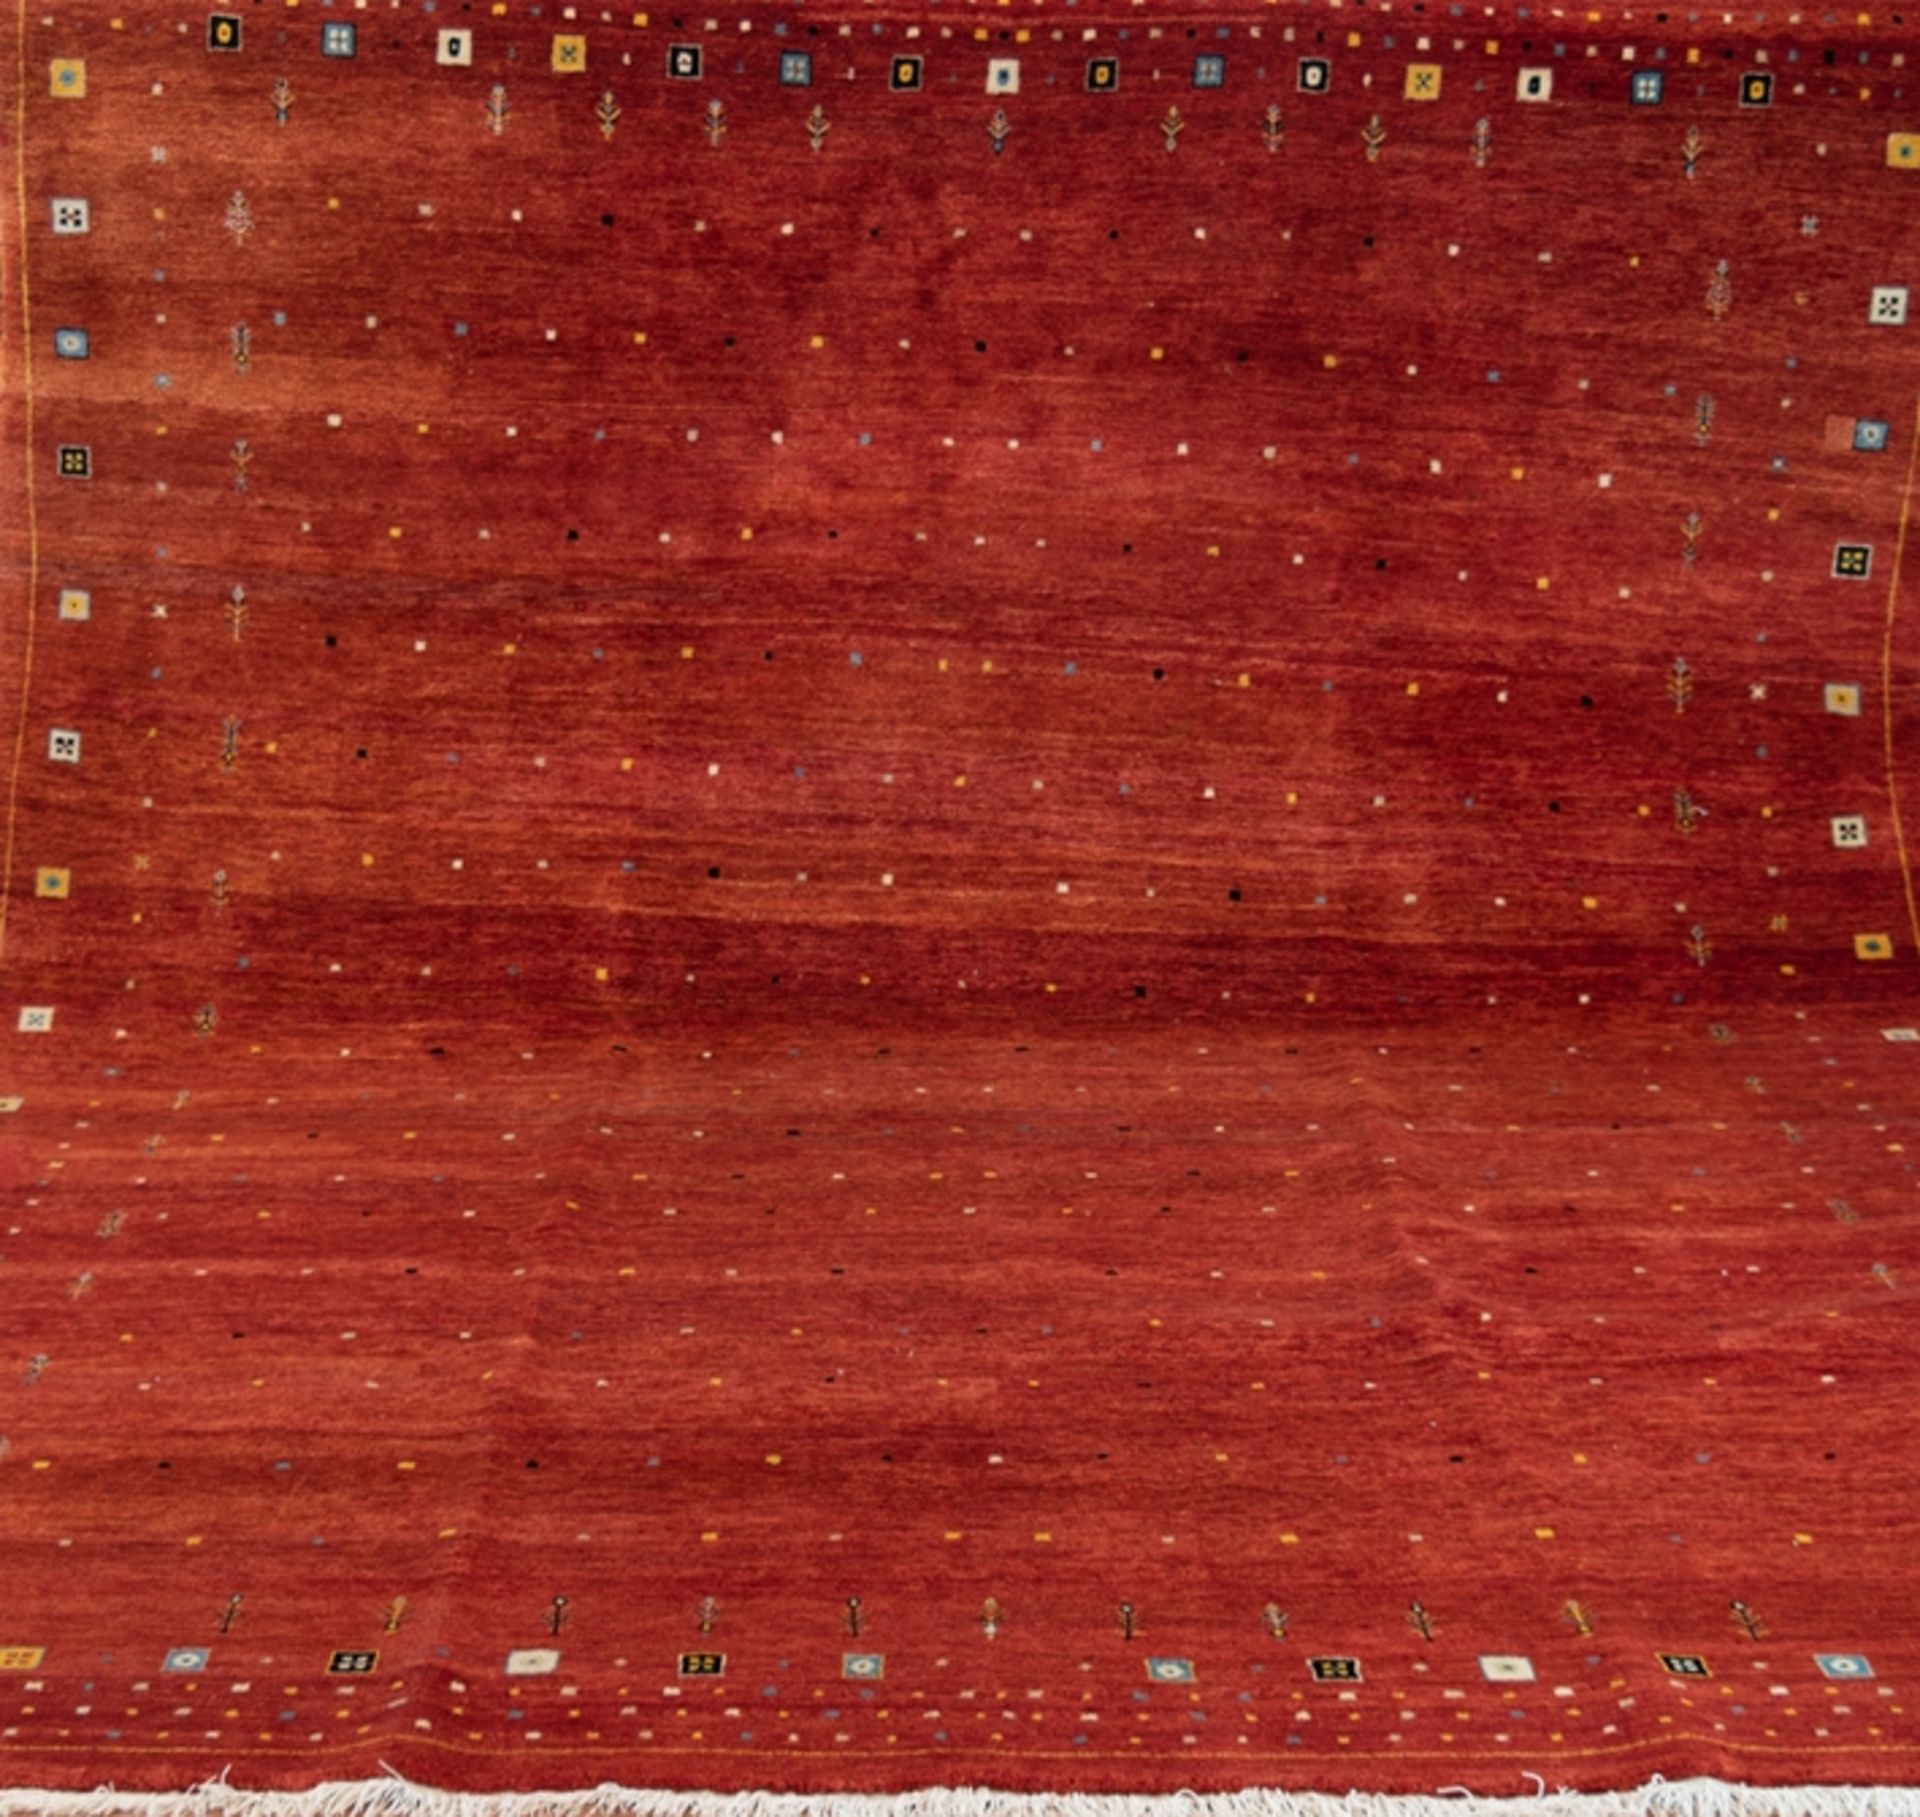 Persischer Teppich, kleine farbige Quadrate auf rotbraunem Grund, 290x240 cm